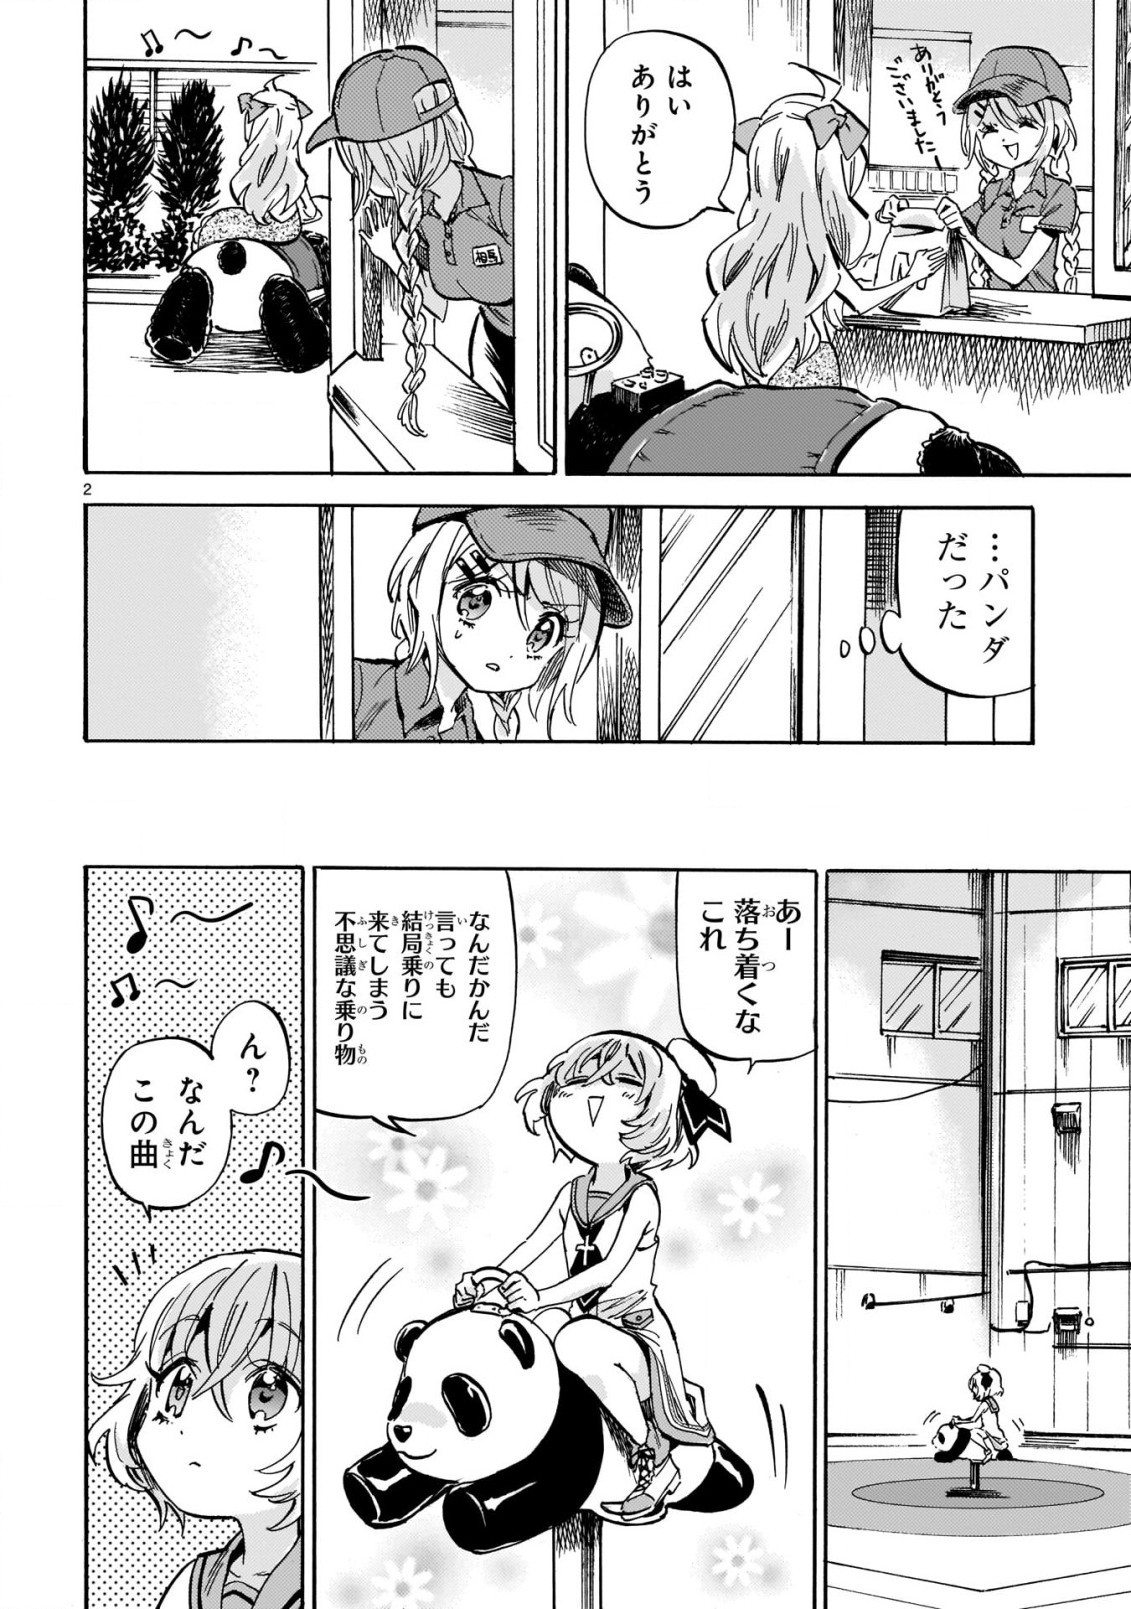 Jashin-chan Dropkick - Chapter 207 - Page 2